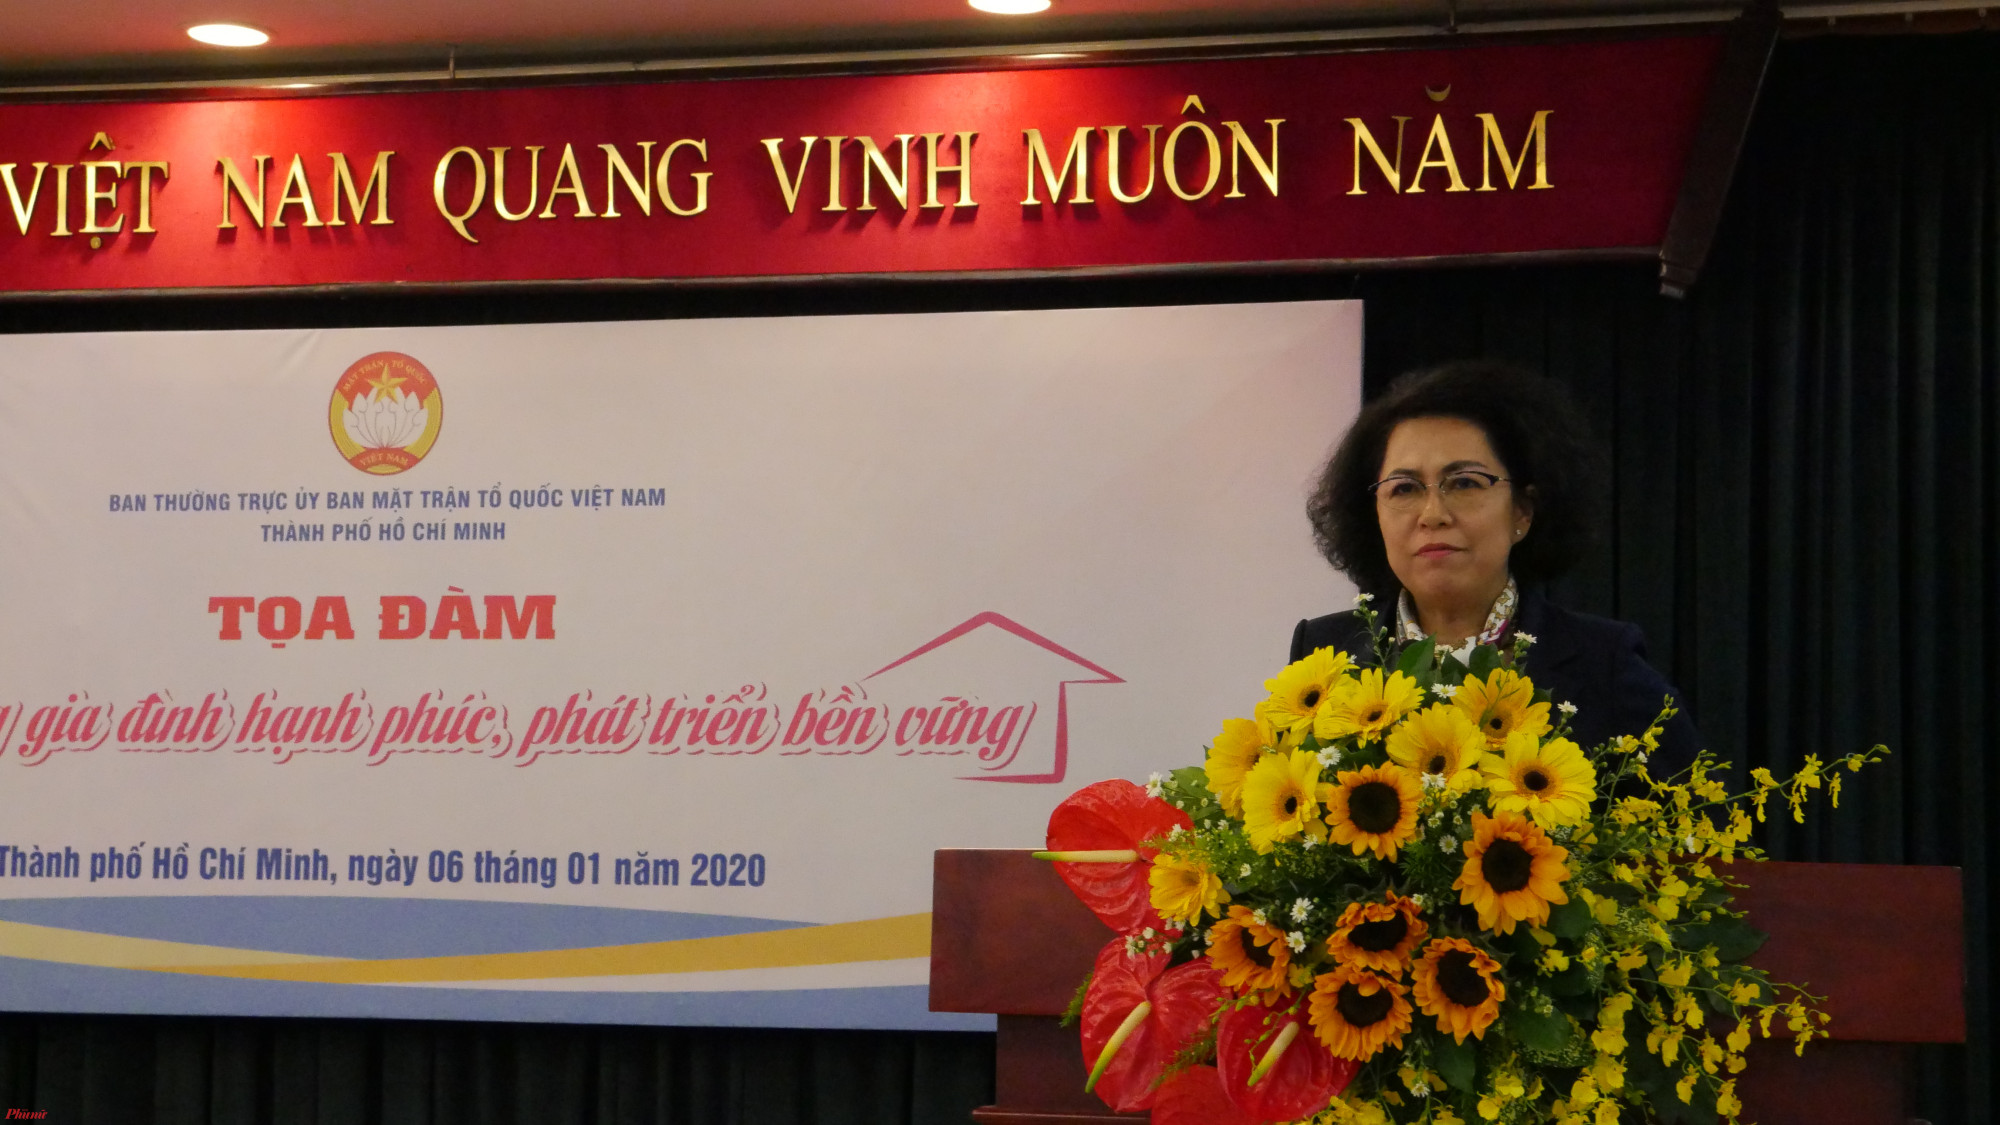 Bà Tô Thị Bích Châu, Chủ tịch Ủy ban MTTQ Việt Nam TP.HCM nhấn mạnh: “Lâu nay khi nhắc đến xây dựng gia đình hạnh phúc là người ta hay nhìn về người phụ nữ